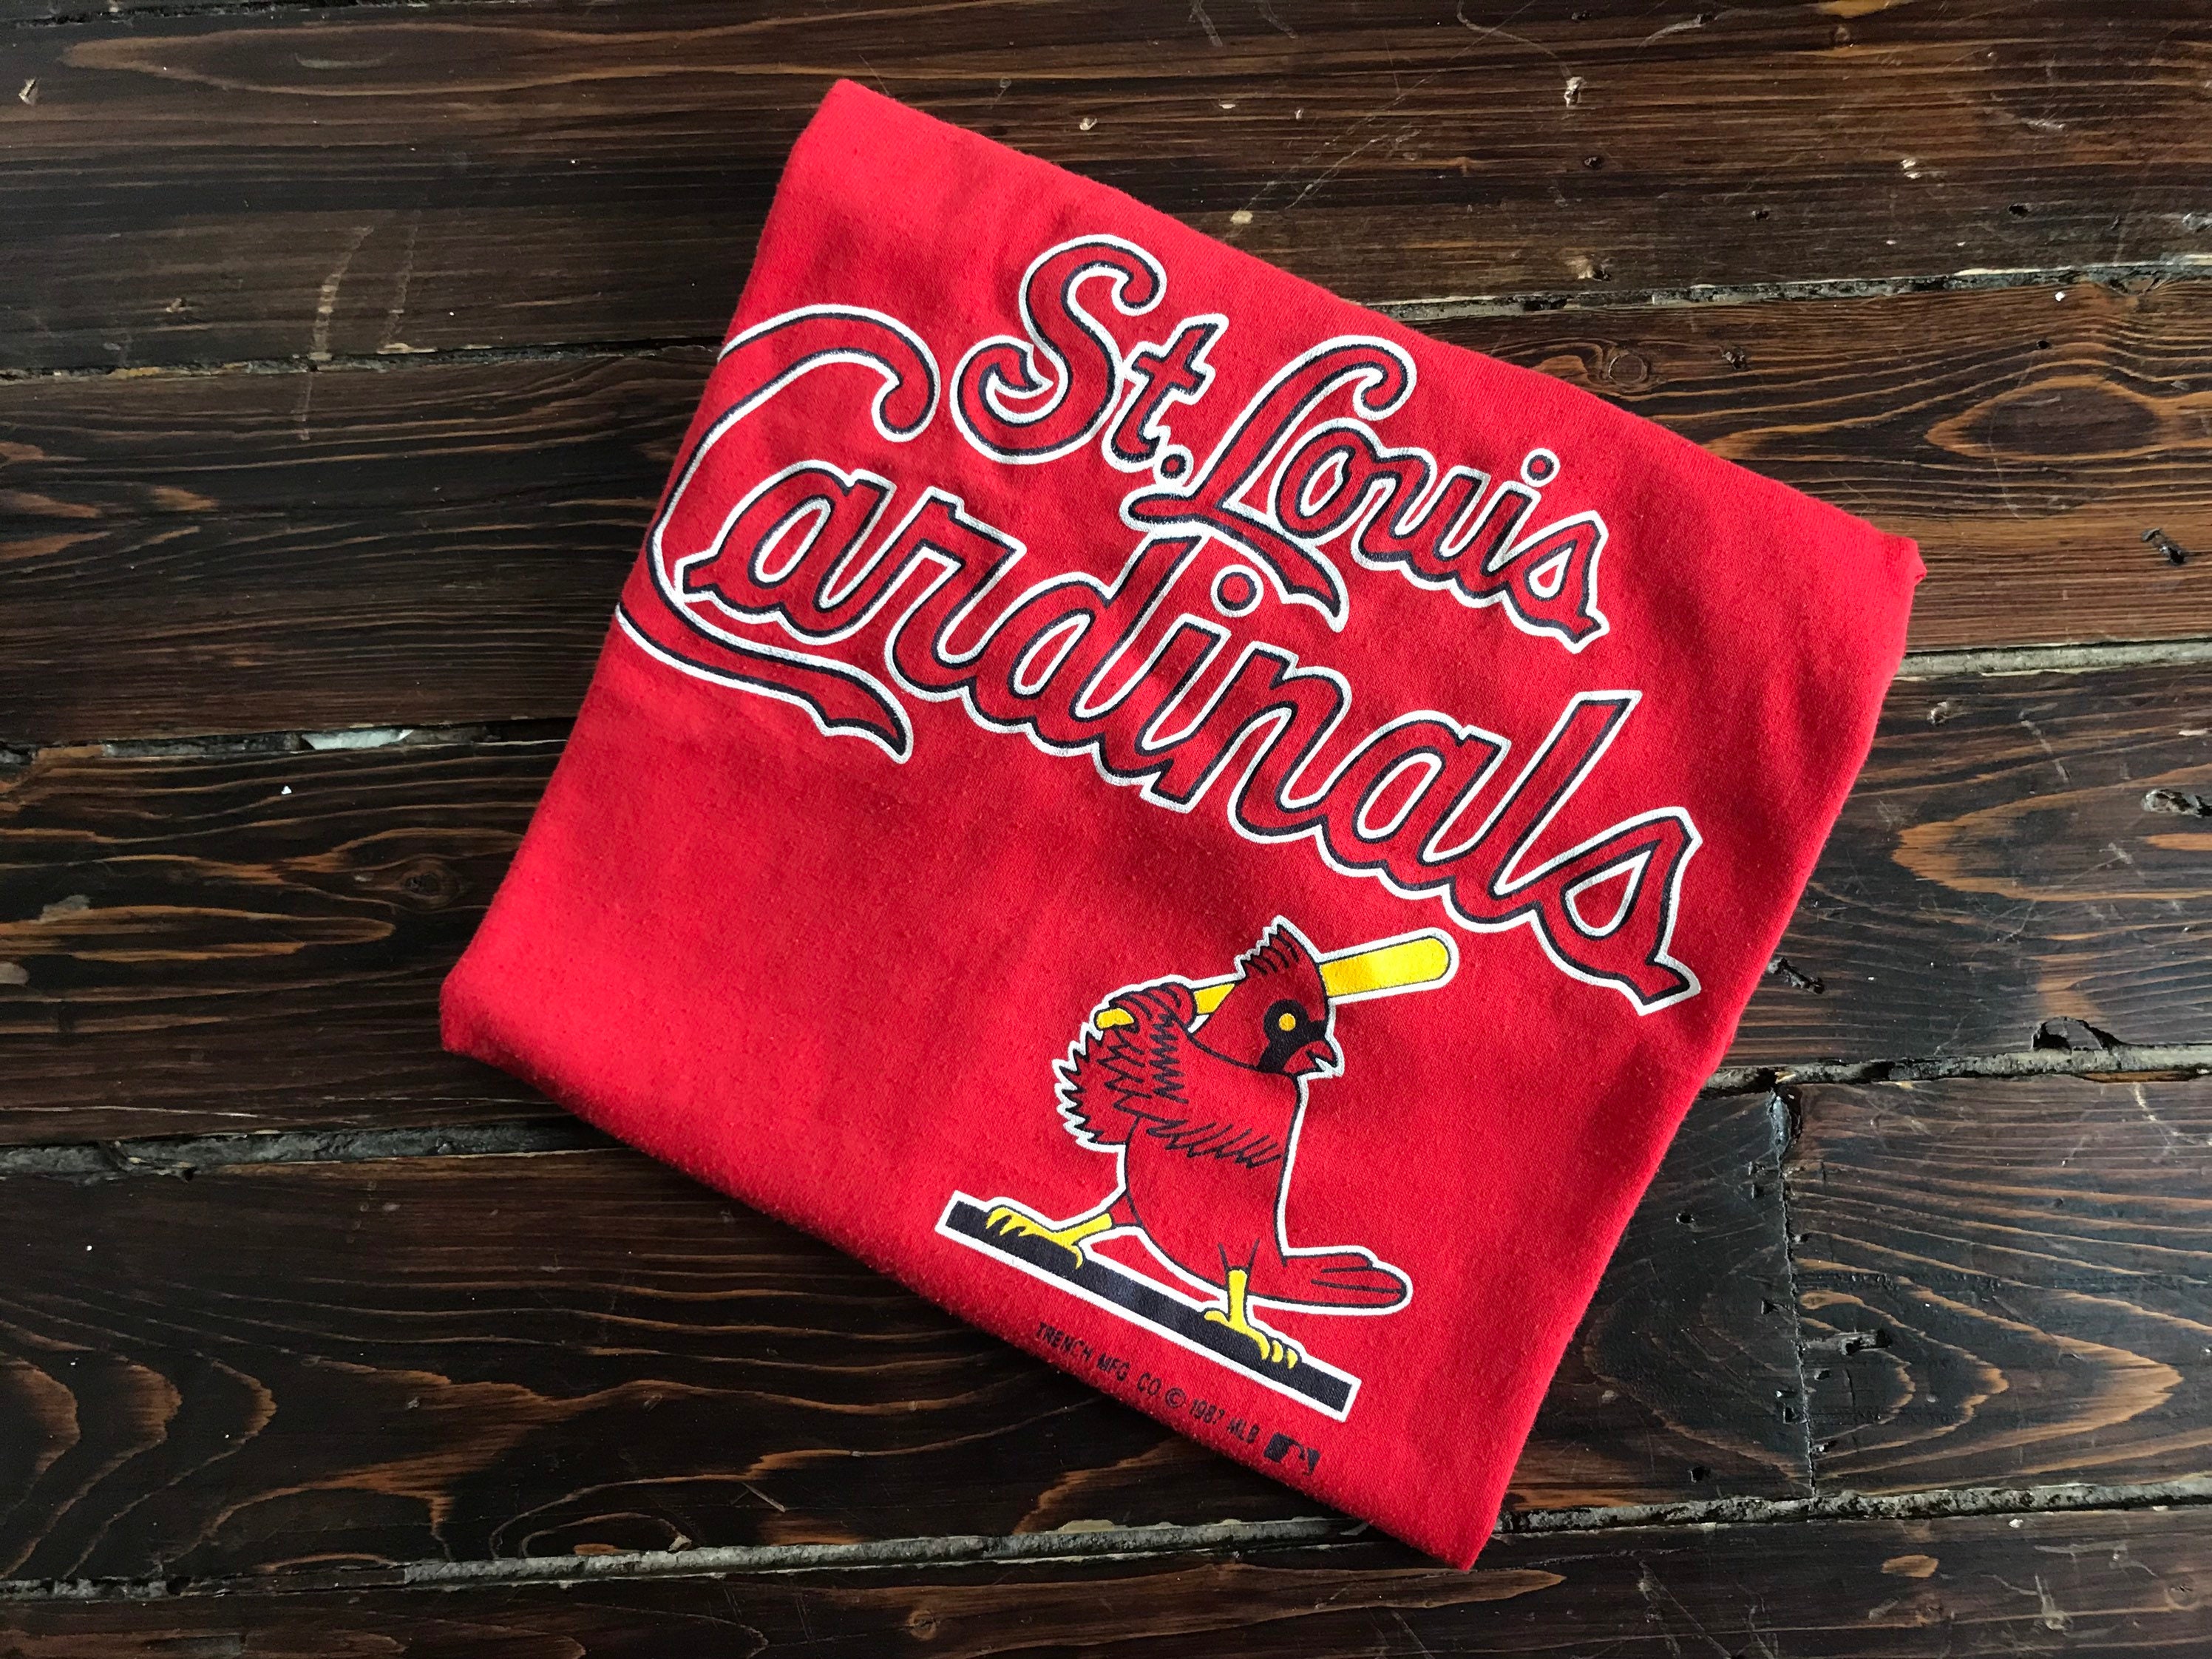 Vintage 1987 St. Louis Cardinals MLB Sweatshirt Size L